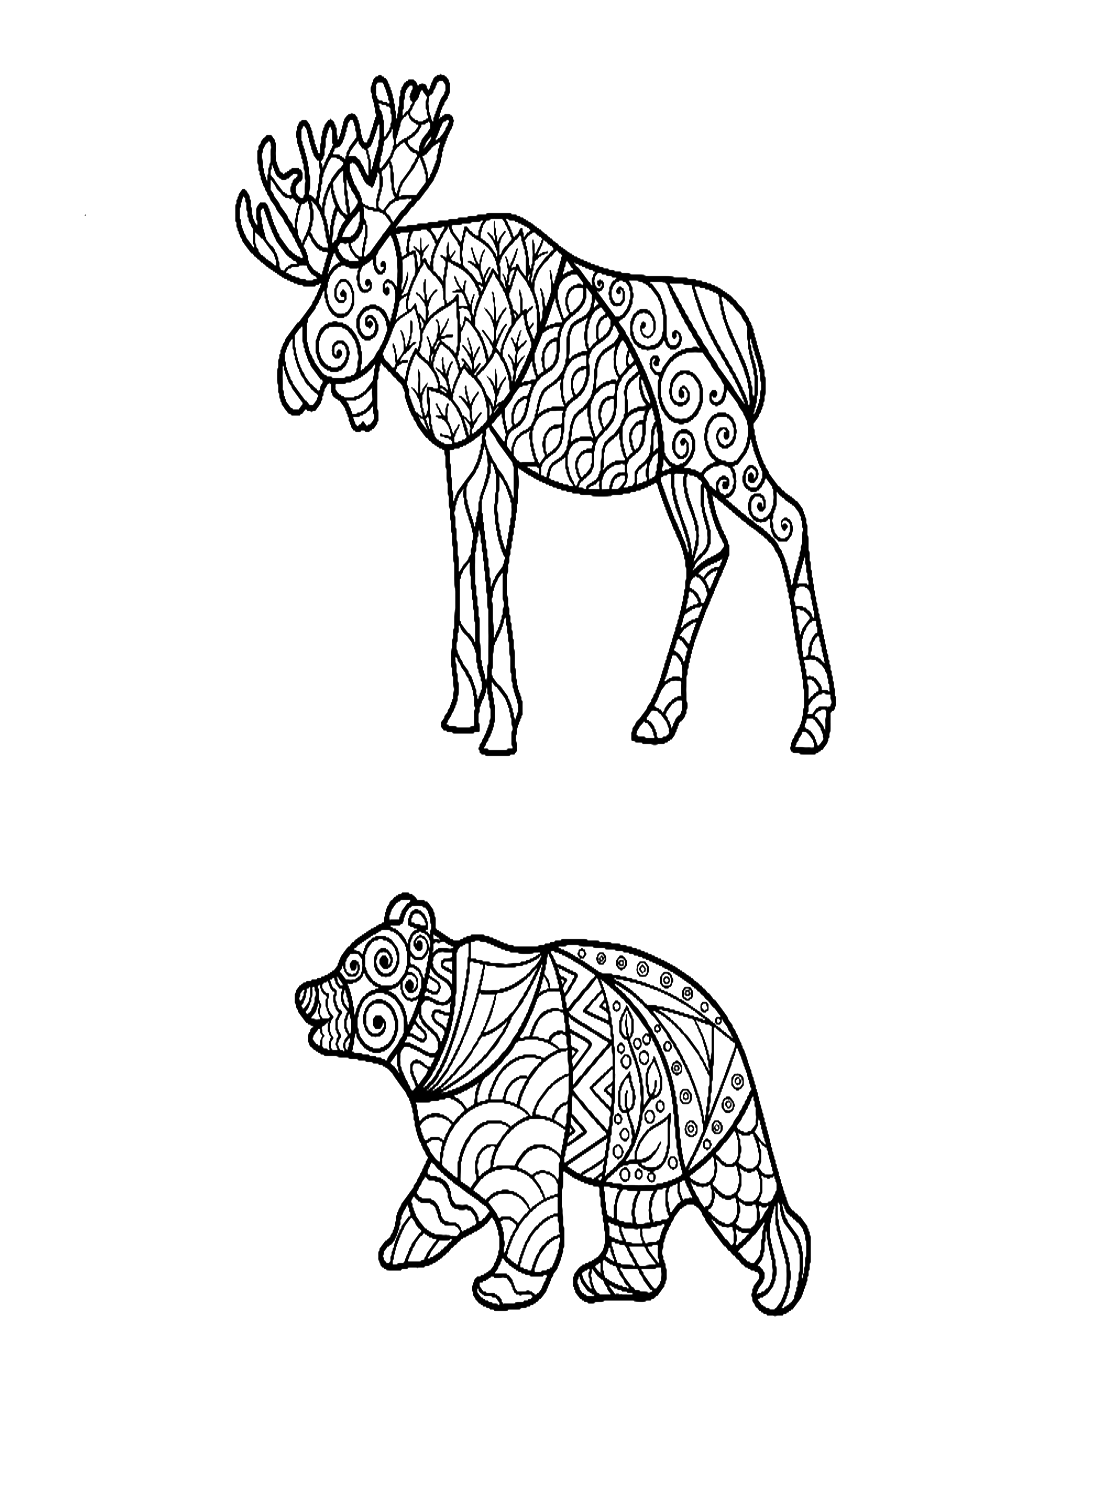 Alce e orso in stile Zentangle di Elk